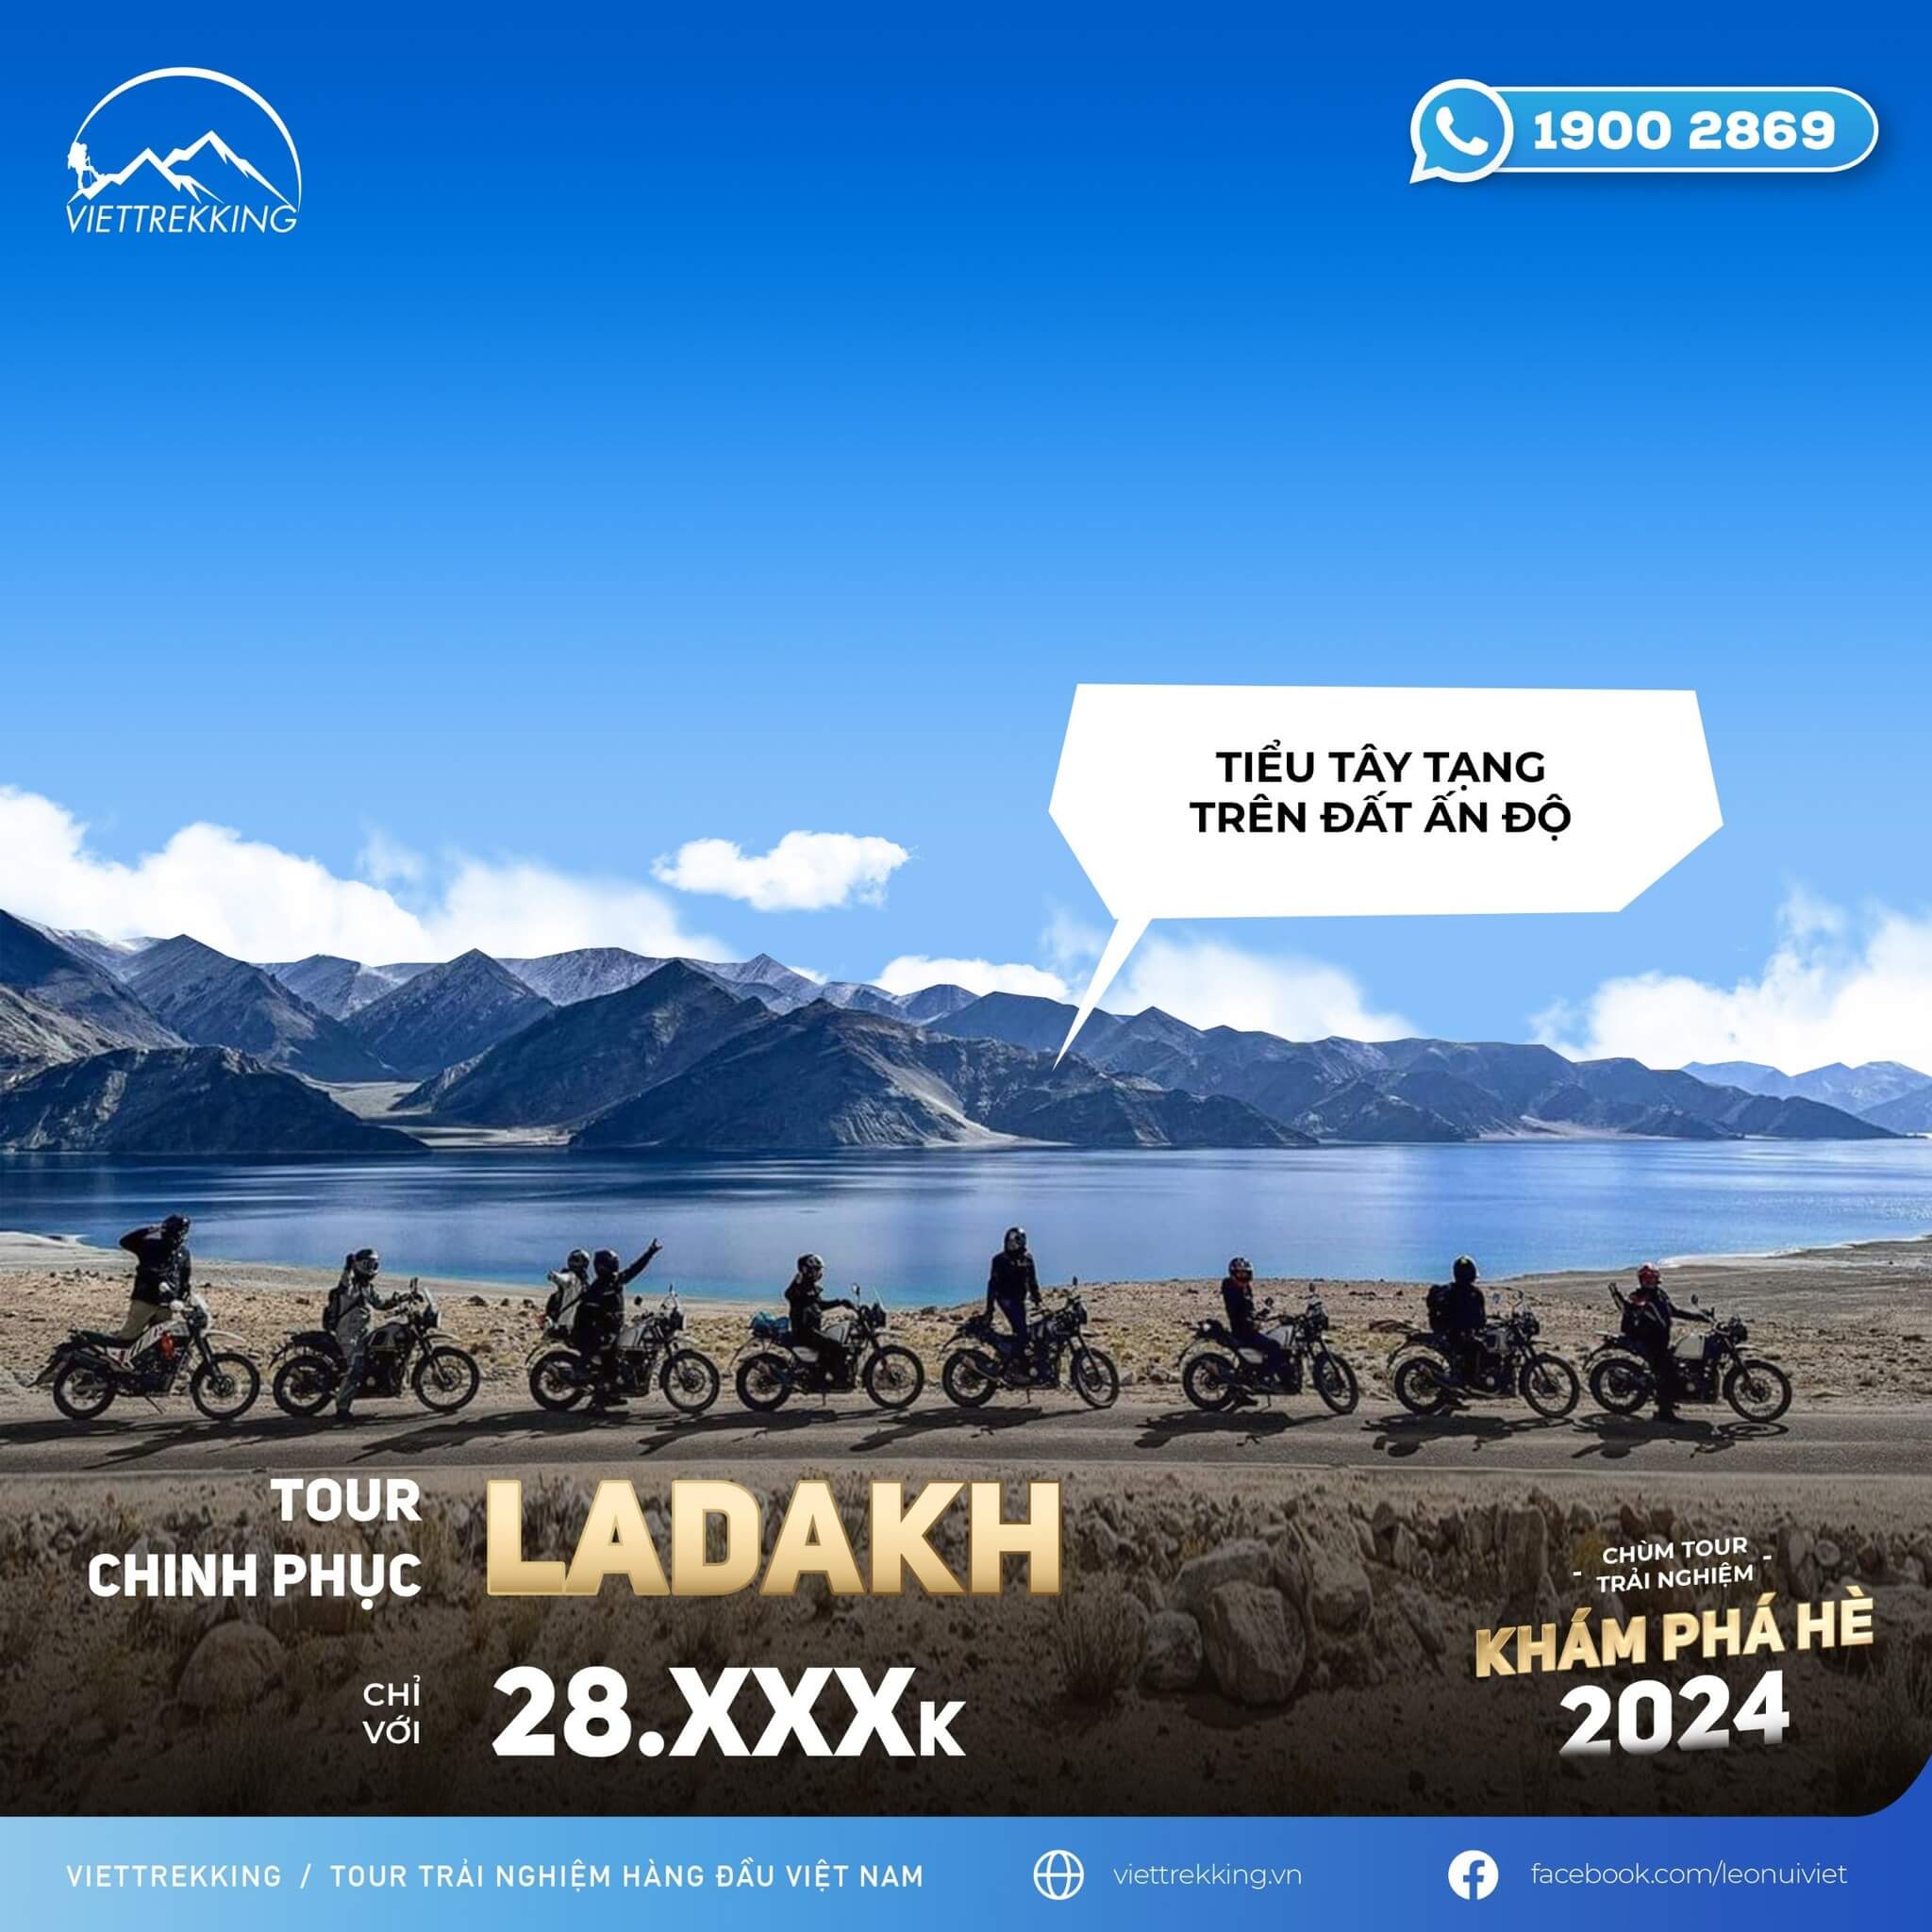 Tour chinh phục Ladakh hè 2024